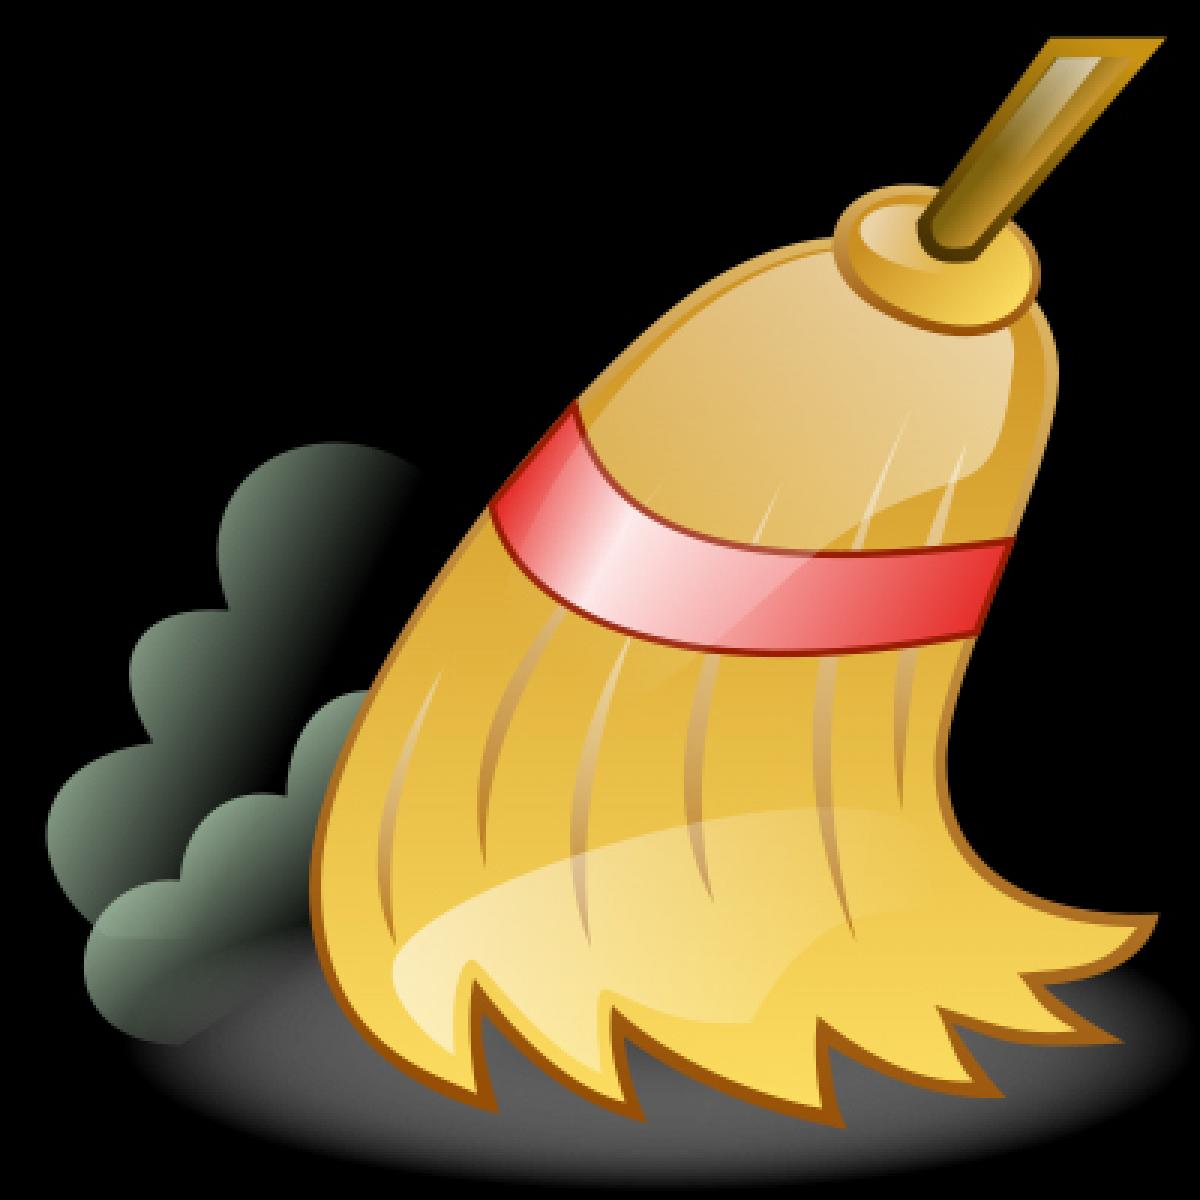 Monona sweeps the weekend